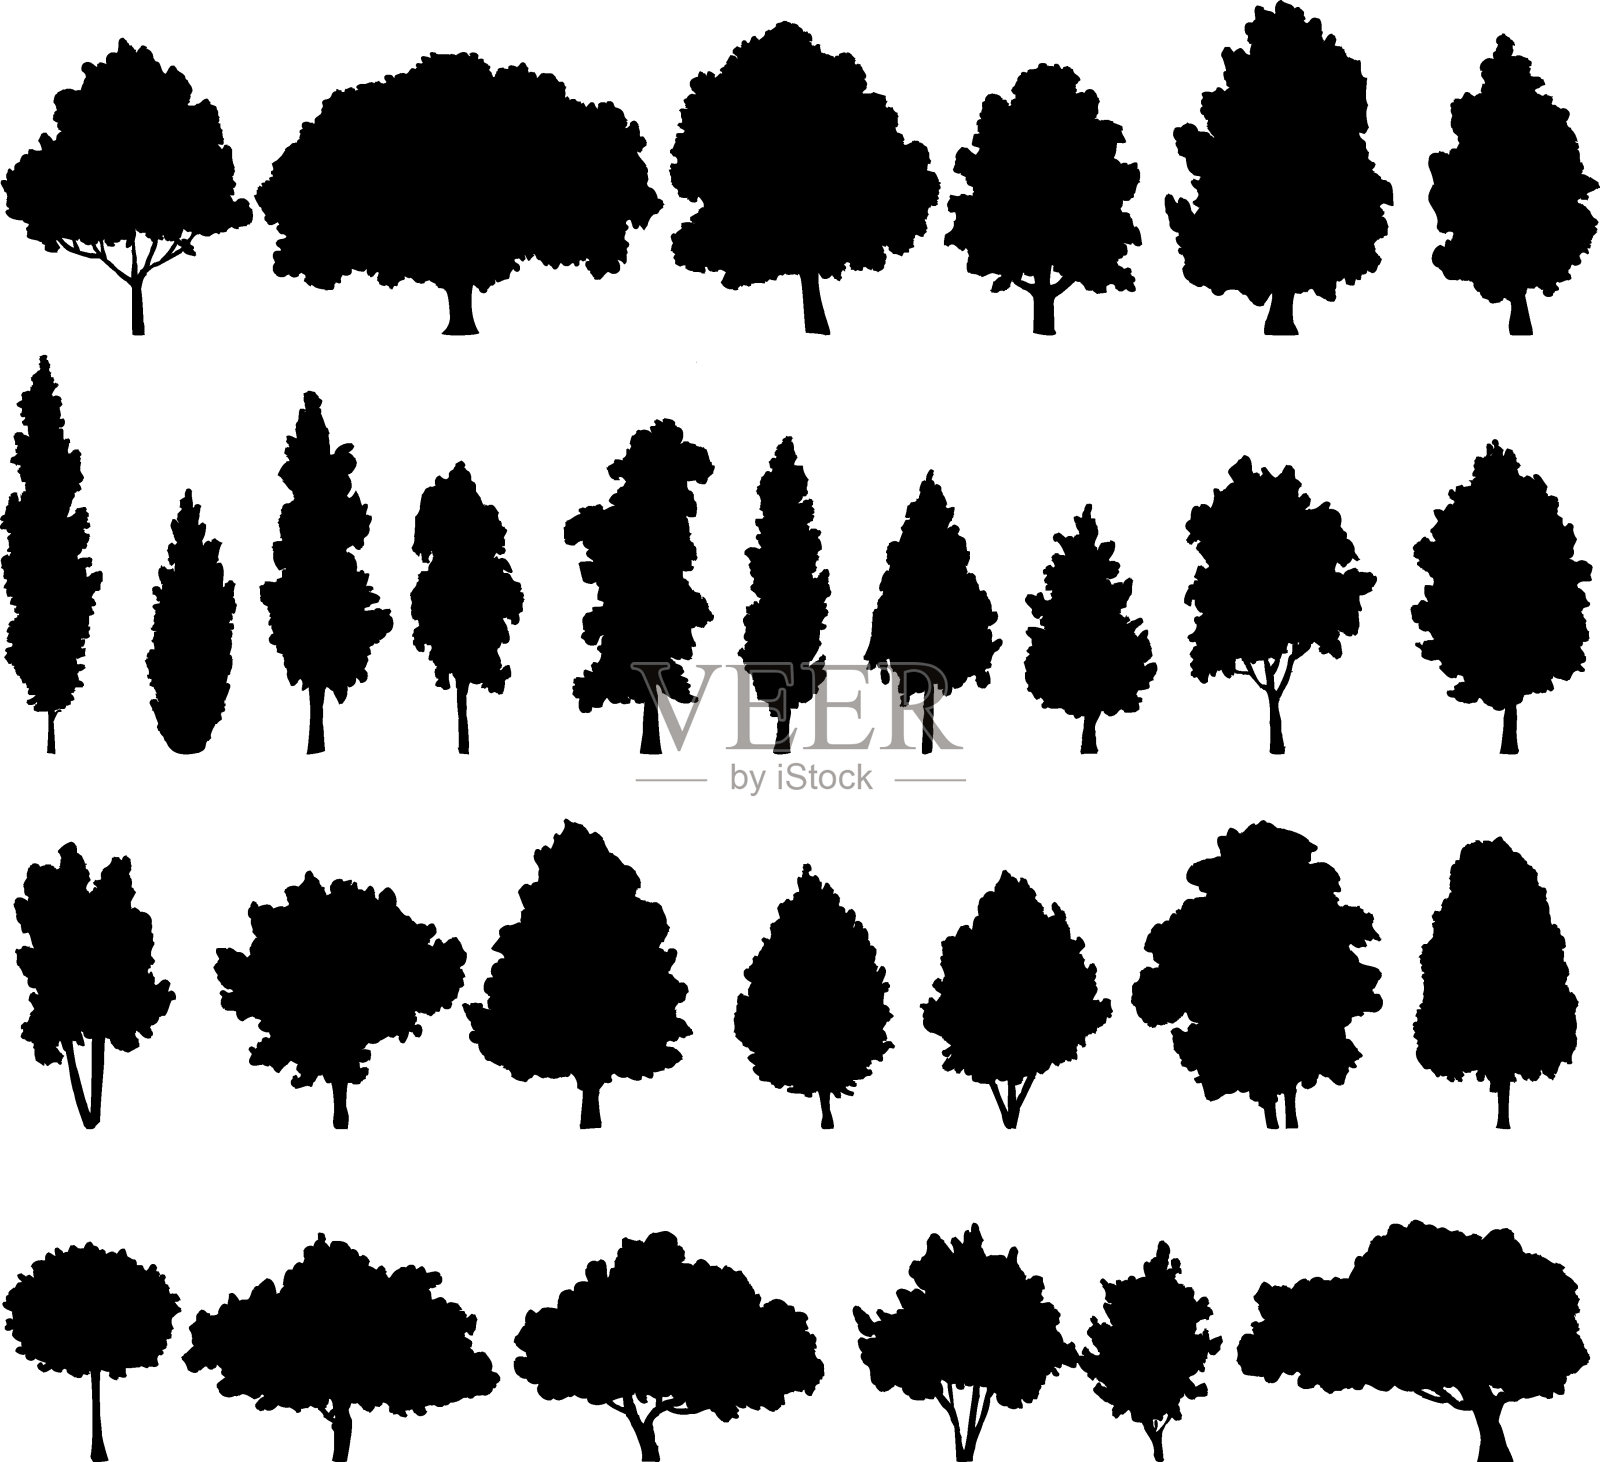 一组不同的落叶树插画图片素材